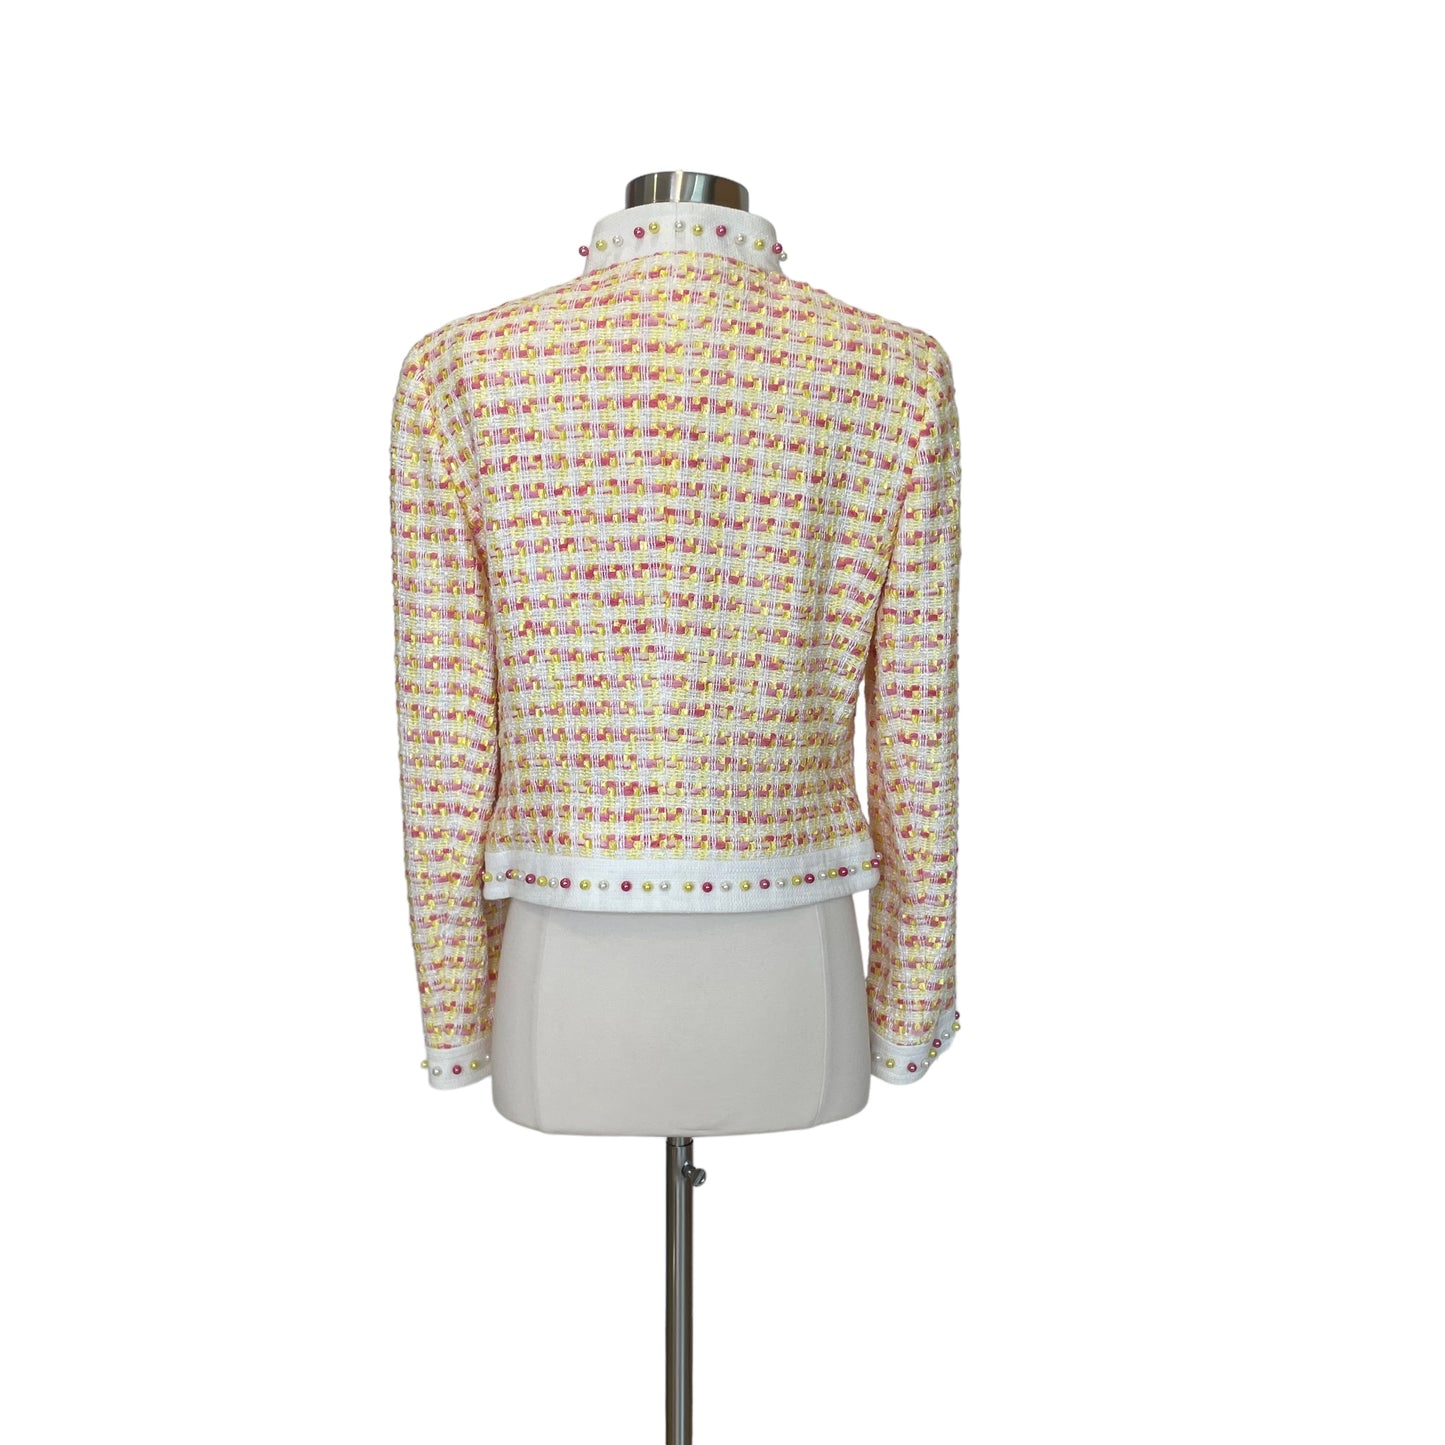 Pink and Yellow Tweed Jacket - 38